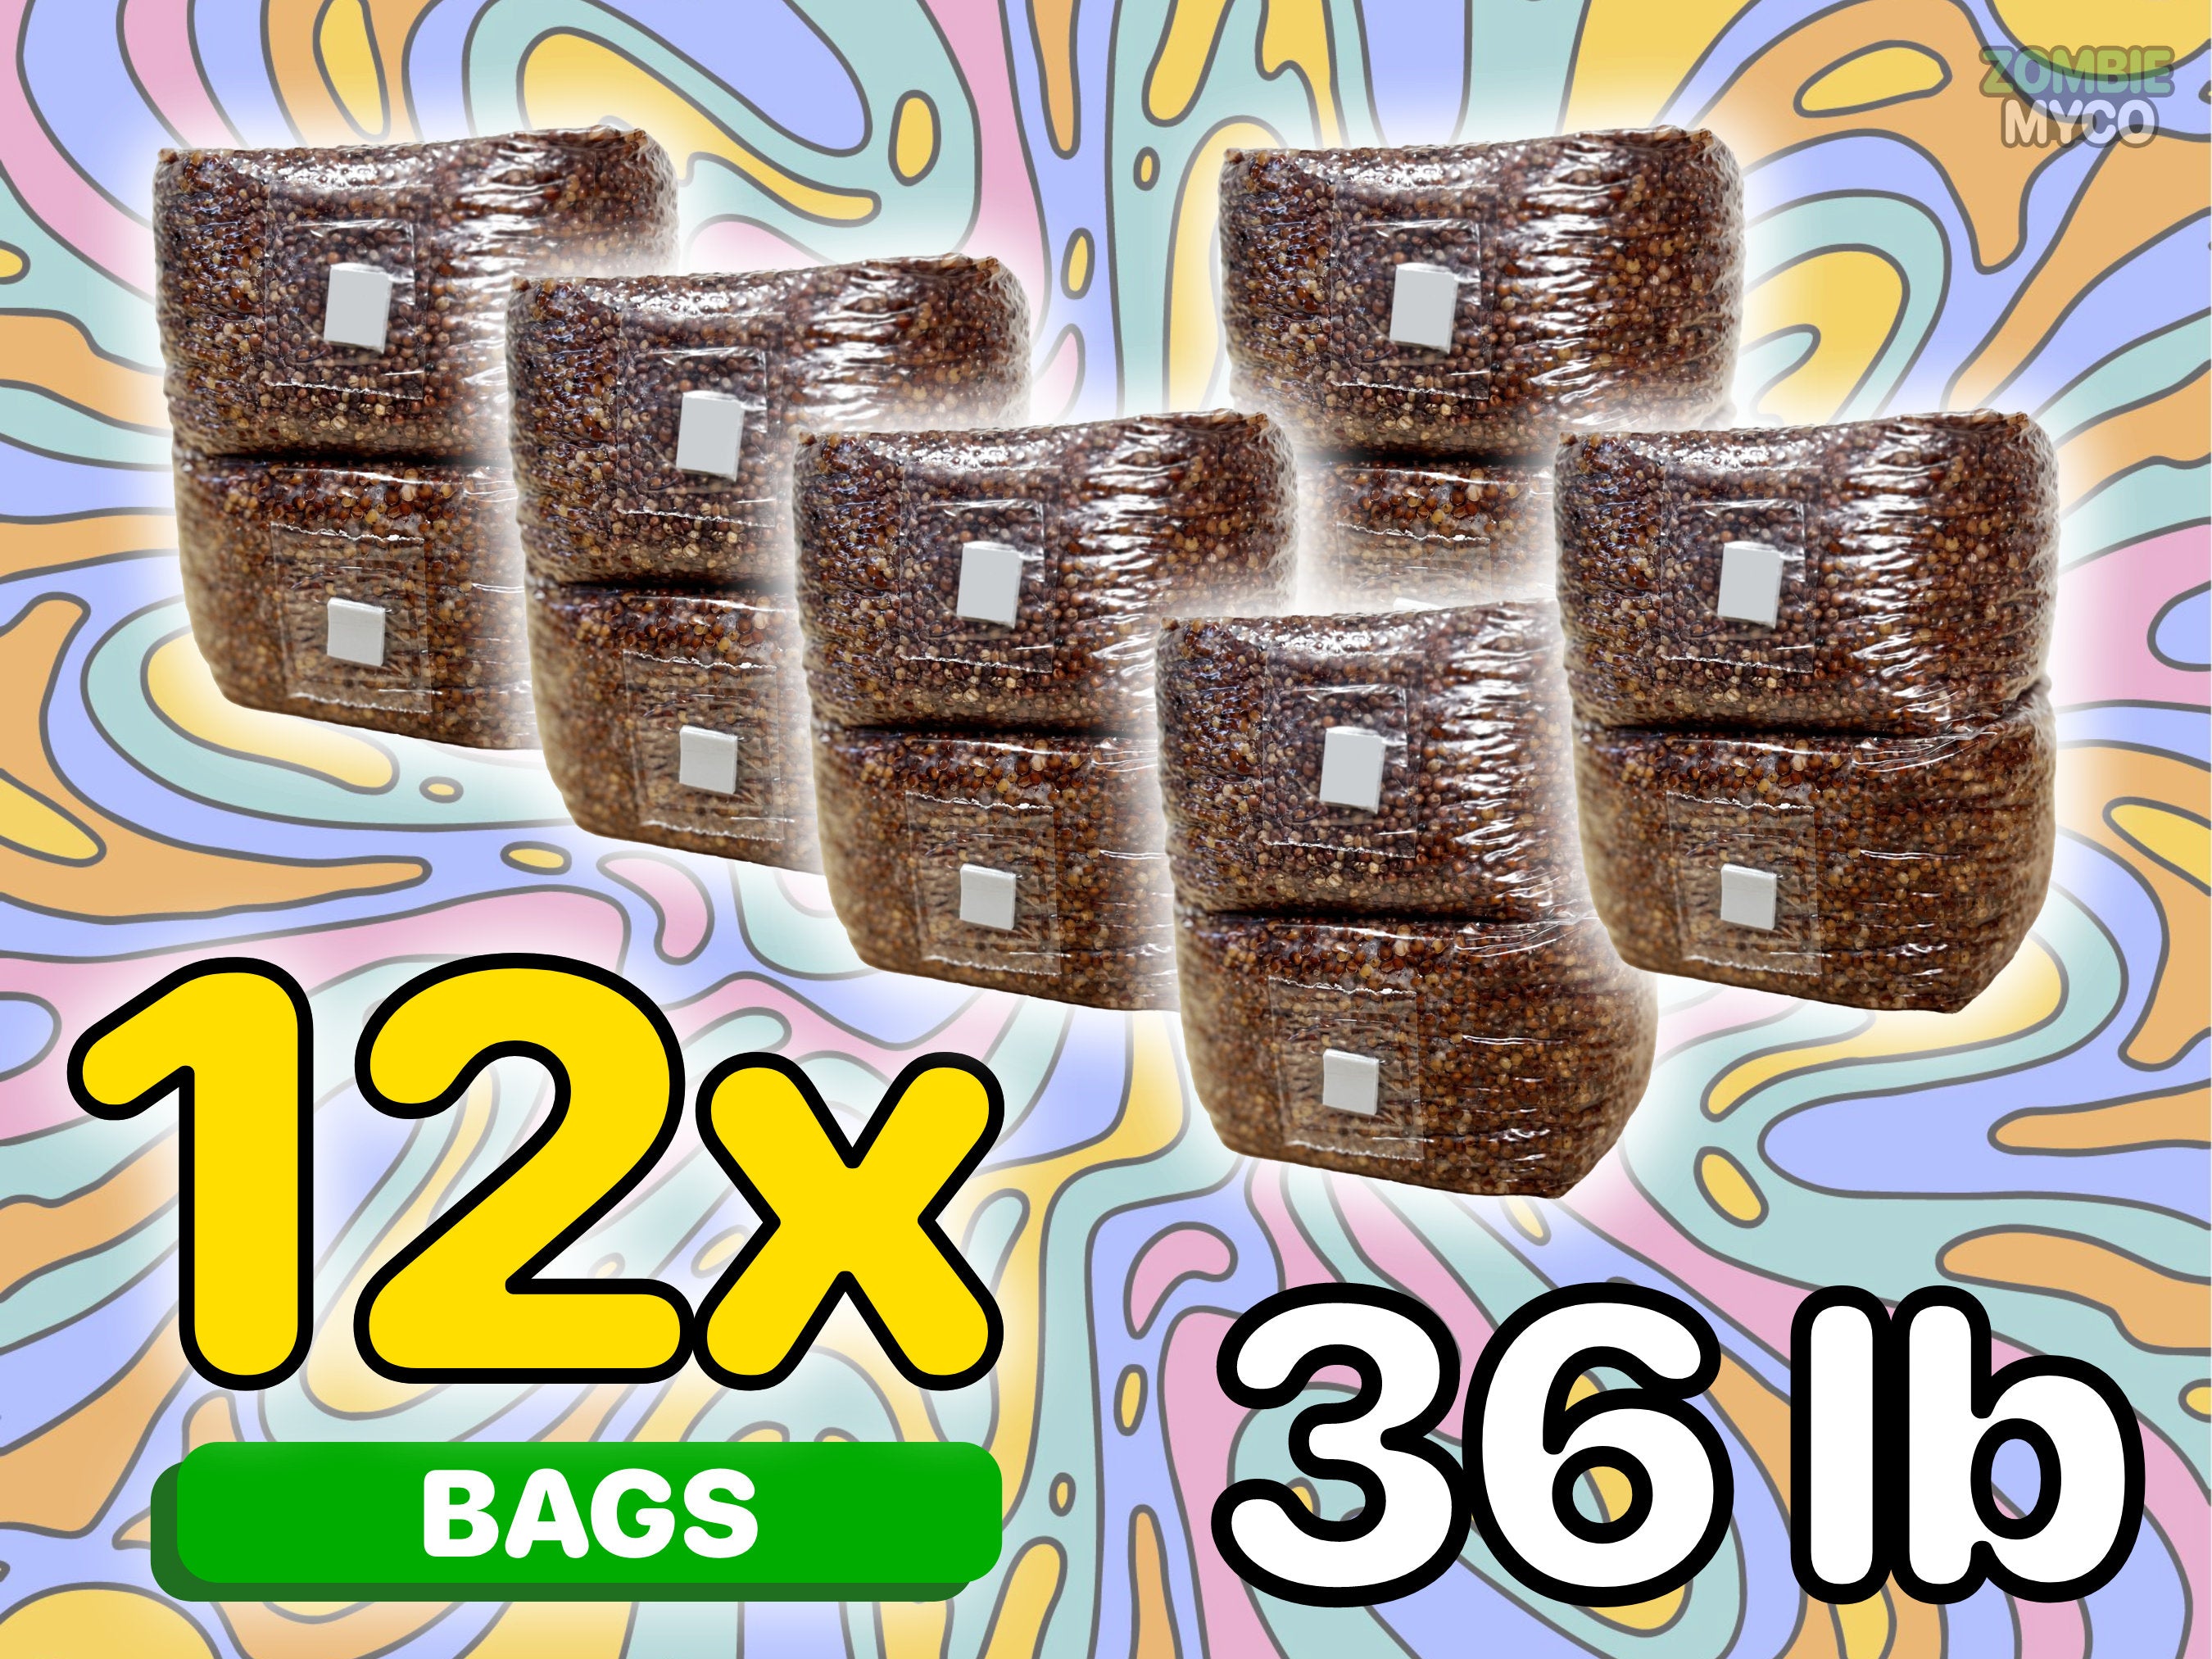 Grain Spawn Mushroom Bags (36lb) - 12x